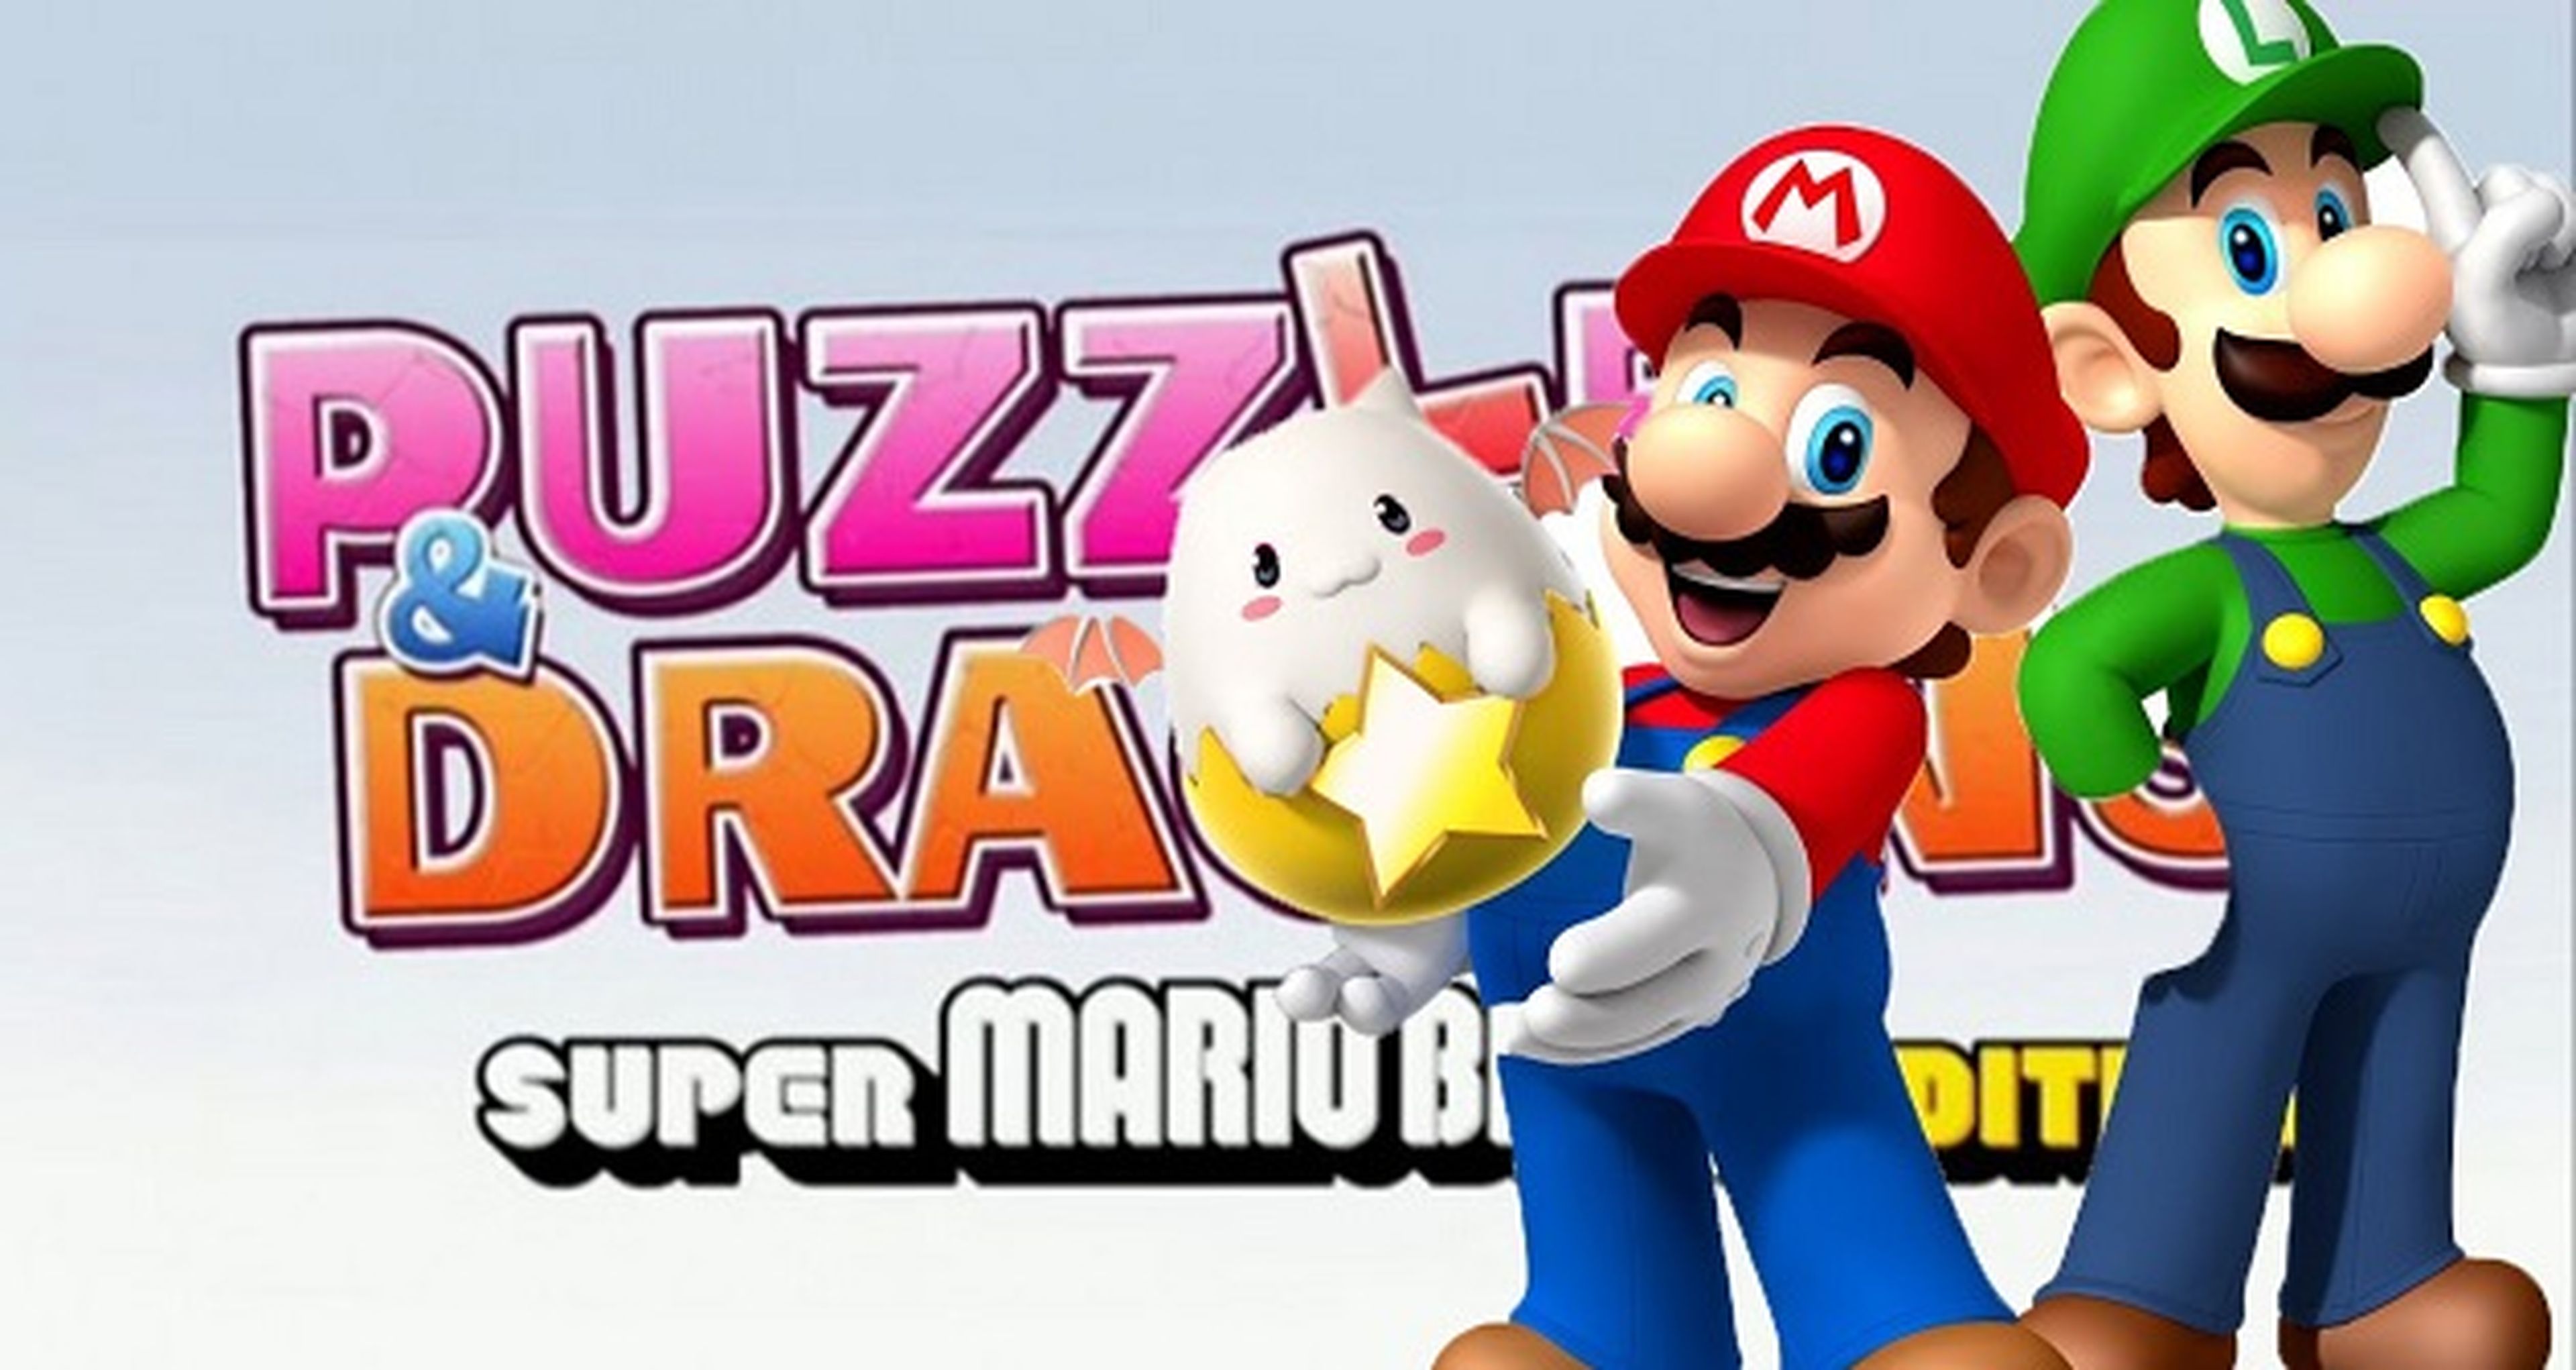 Demo de Puzzle &amp; Dragons: Super Mario Bros. Edition ya disponible